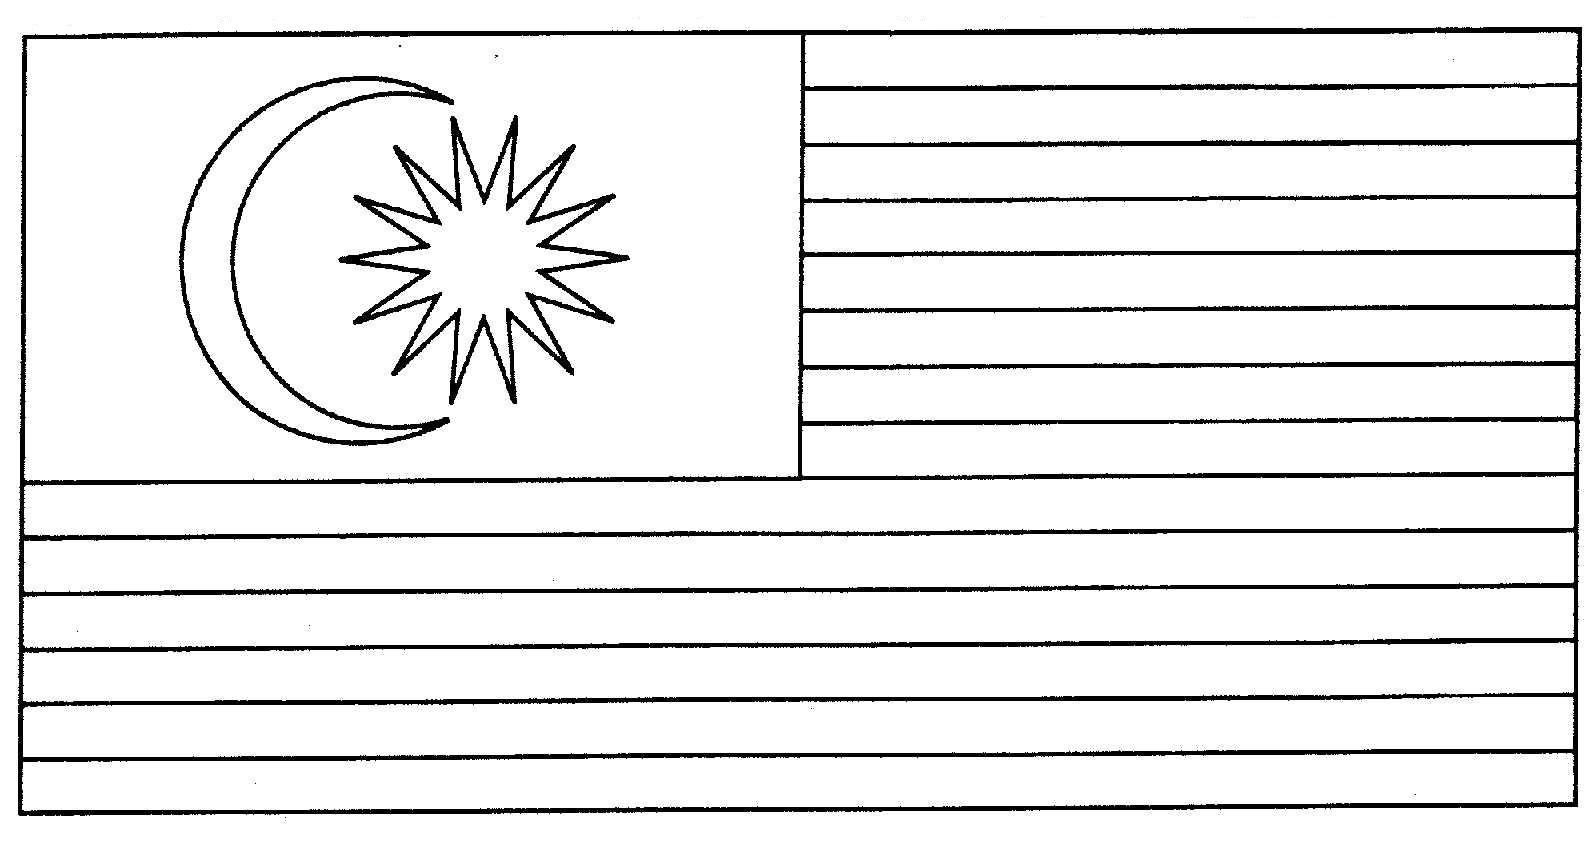 Lukisan Bendera Malaysia Images - Reverse Search